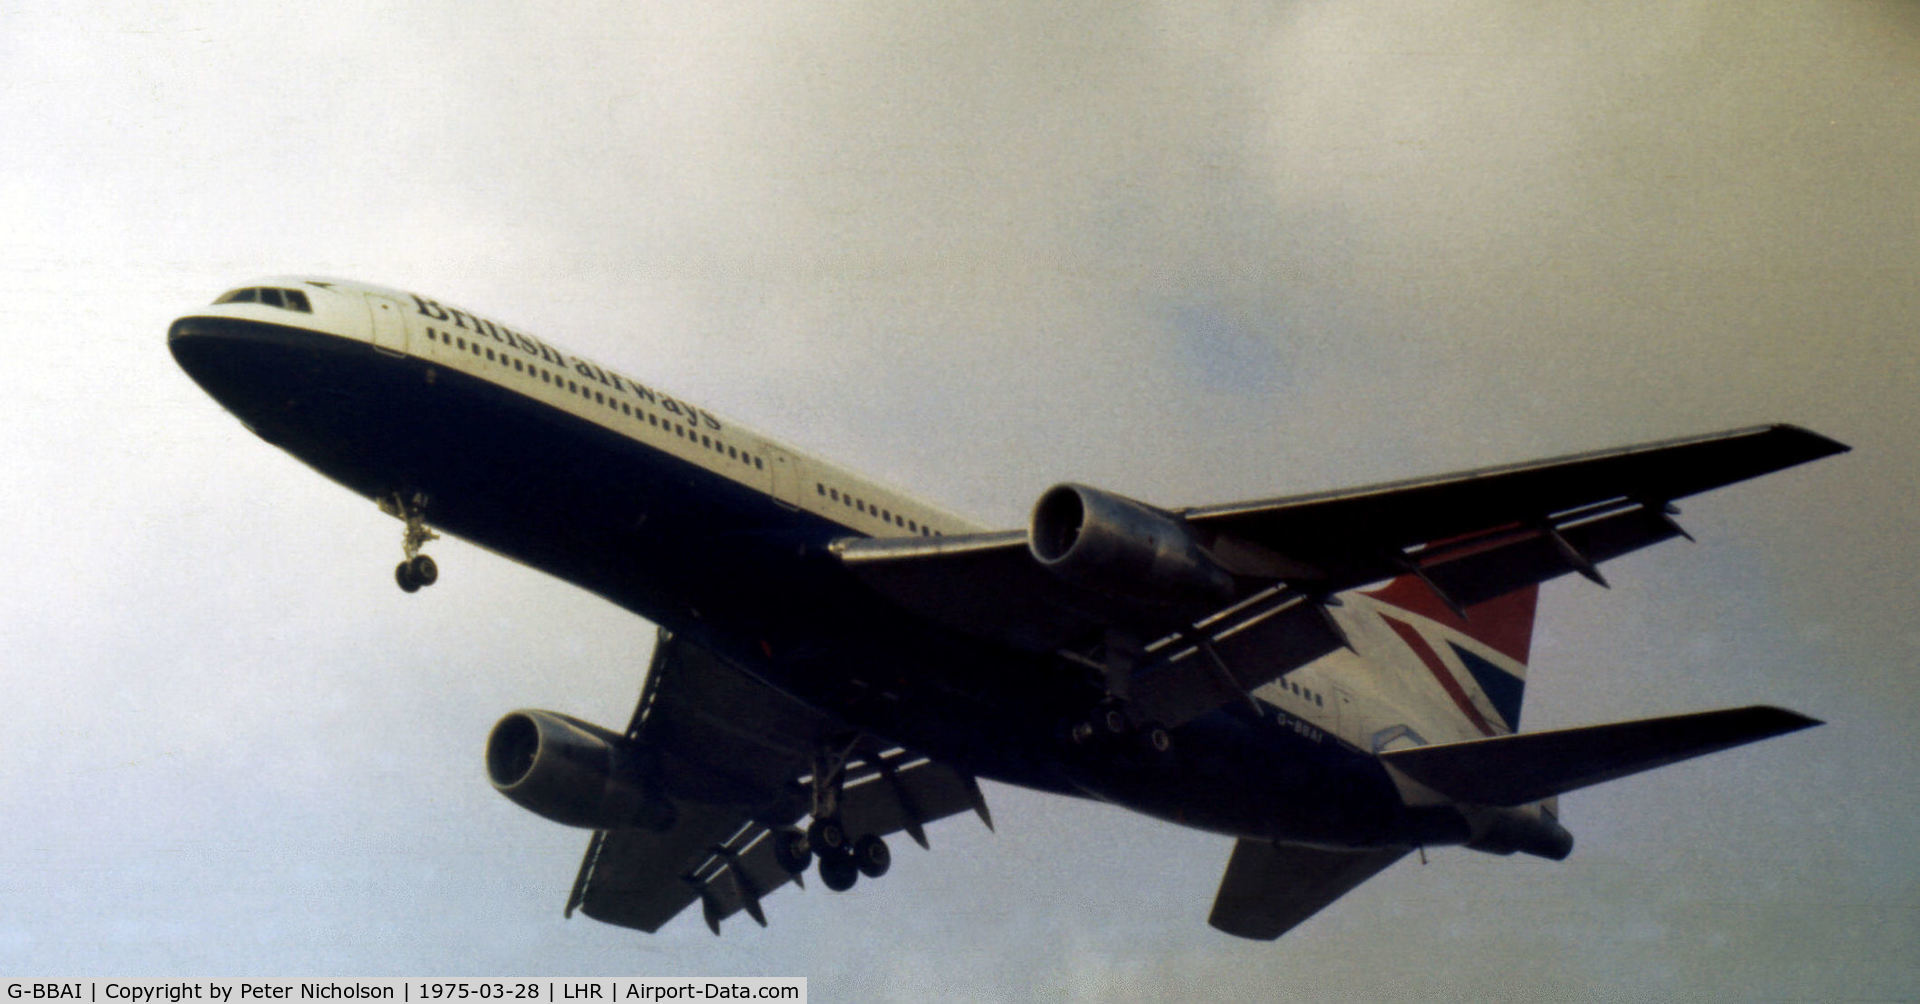 G-BBAI, 1974 Lockheed L-1011-385-1 TriStar 1 C/N 193N-1102, L.1011 TriStar of British Airways on approach to Heathrow in March 1975.